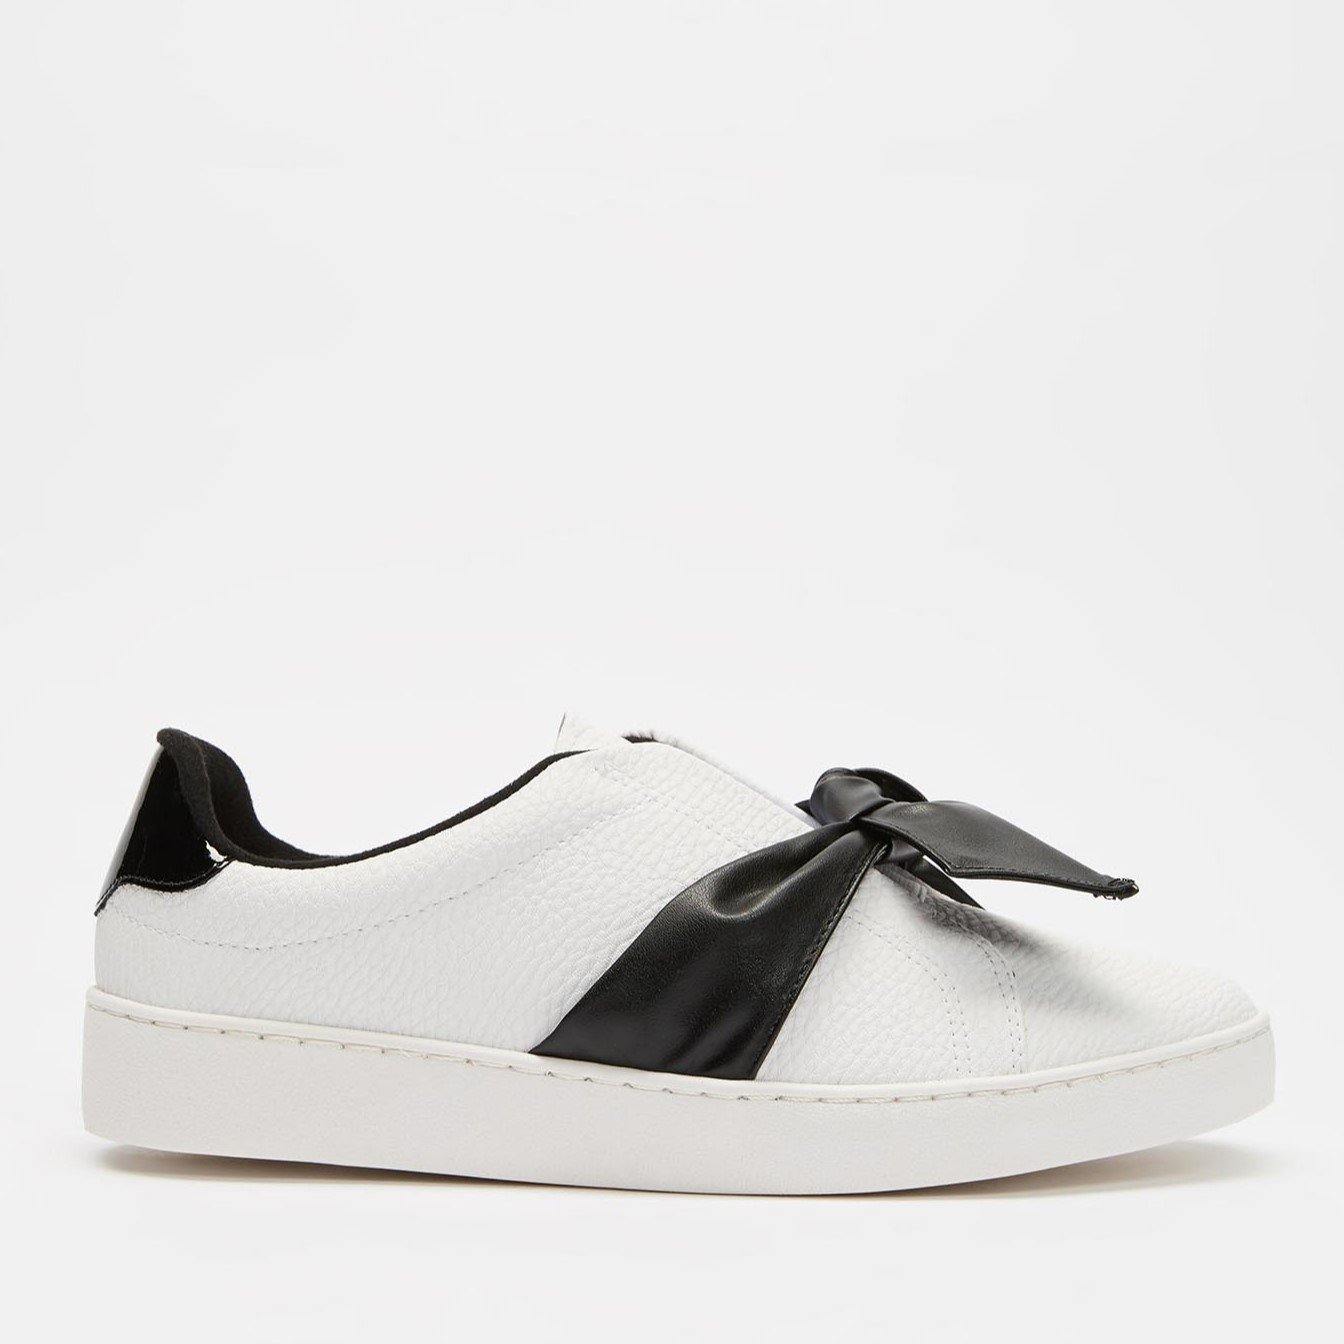 Vizzano 1214-298 Bowtie Sneaker in White/Black Napa – Charley Boutique